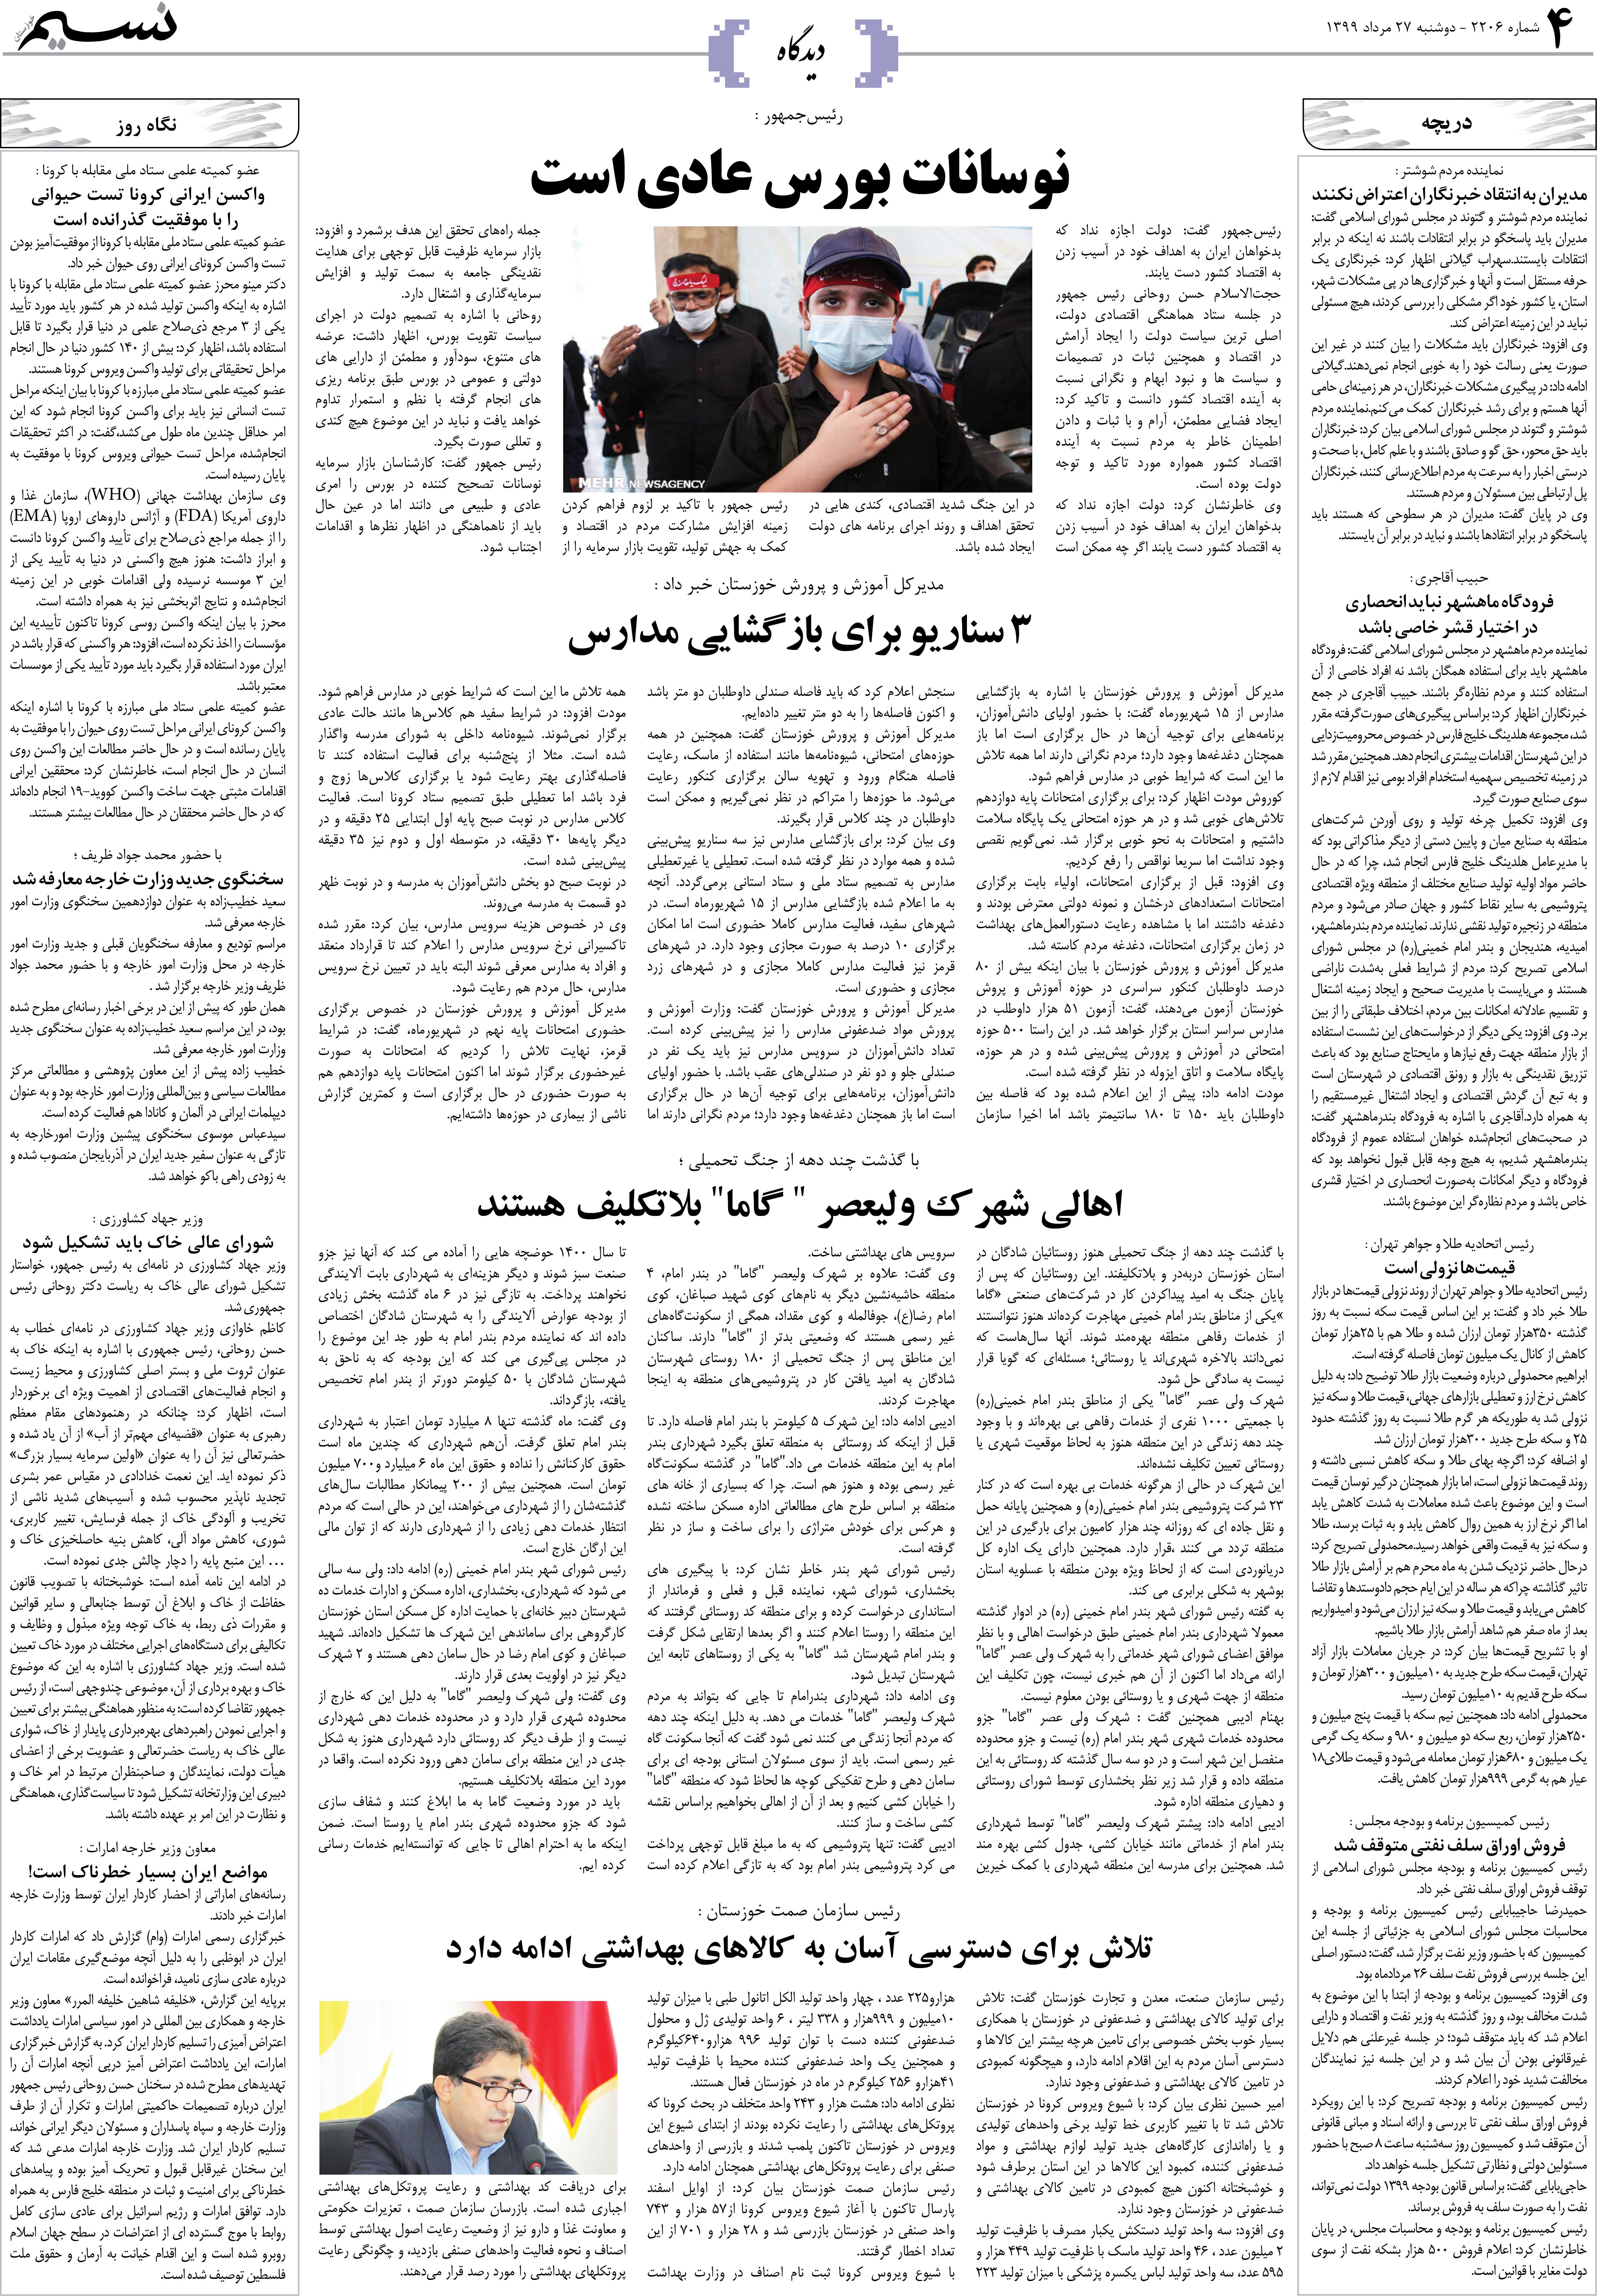 صفحه دیدگاه روزنامه نسیم شماره 2206